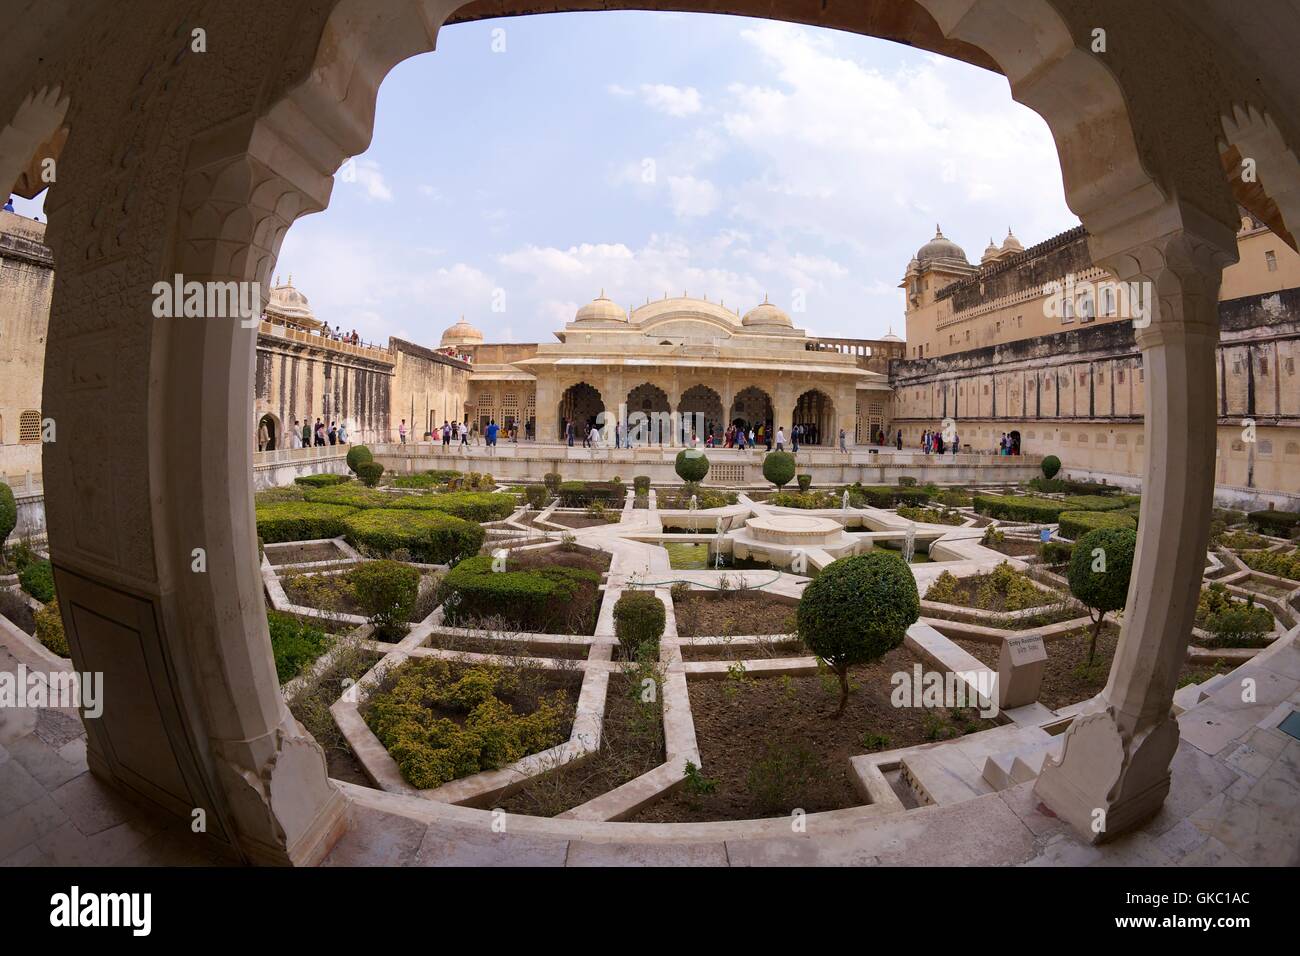 Los jardines y el salón de los espejos, Amber fort palace, Jaipur, Rajasthan, India, Asia Foto de stock